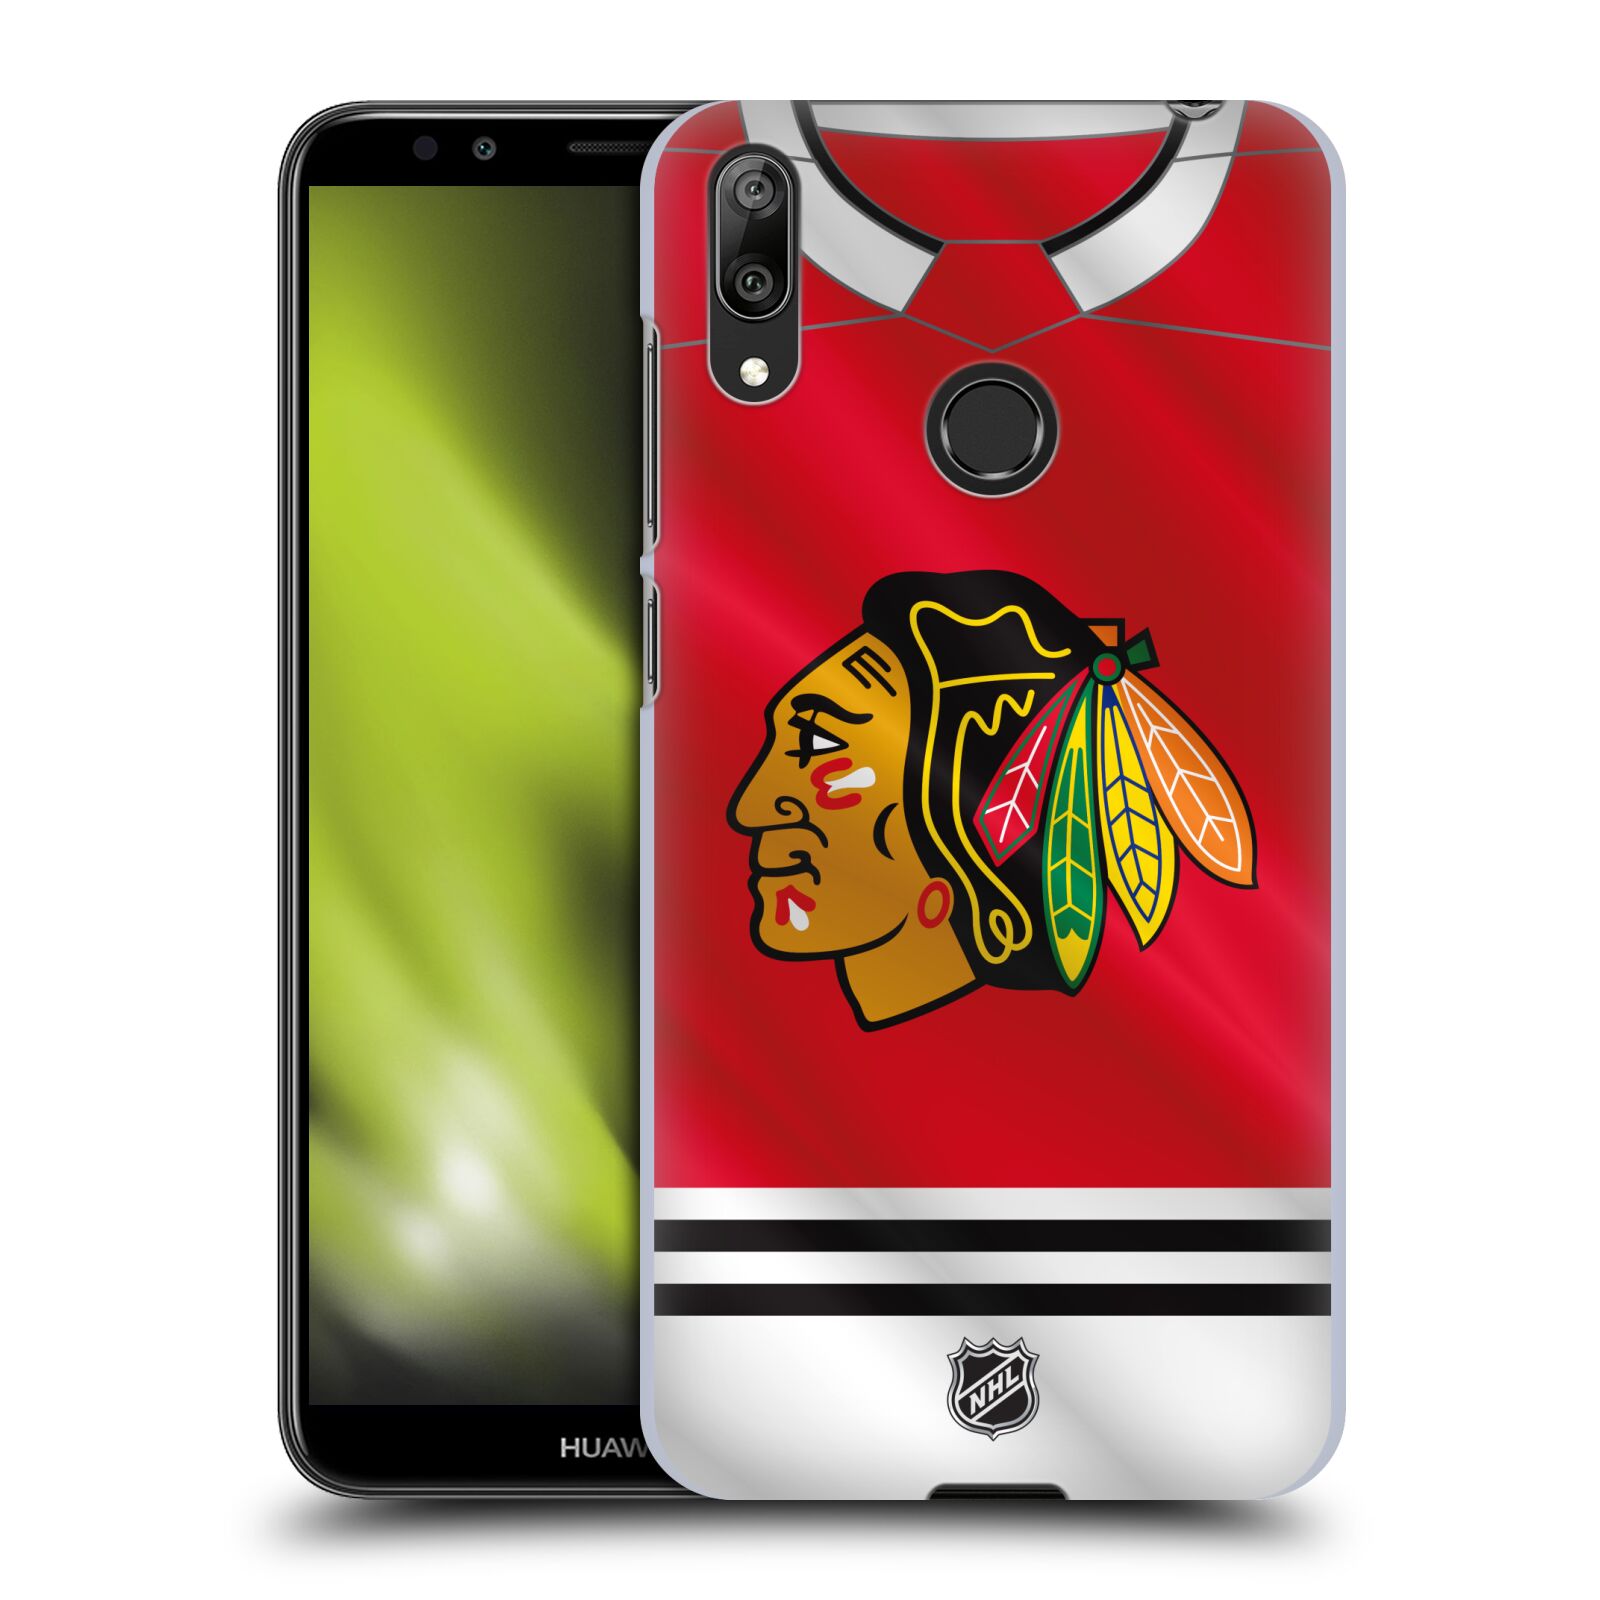 Pouzdro na mobil Huawei Y7 2019 - HEAD CASE - Hokej NHL - Chicago Blackhawks - dres